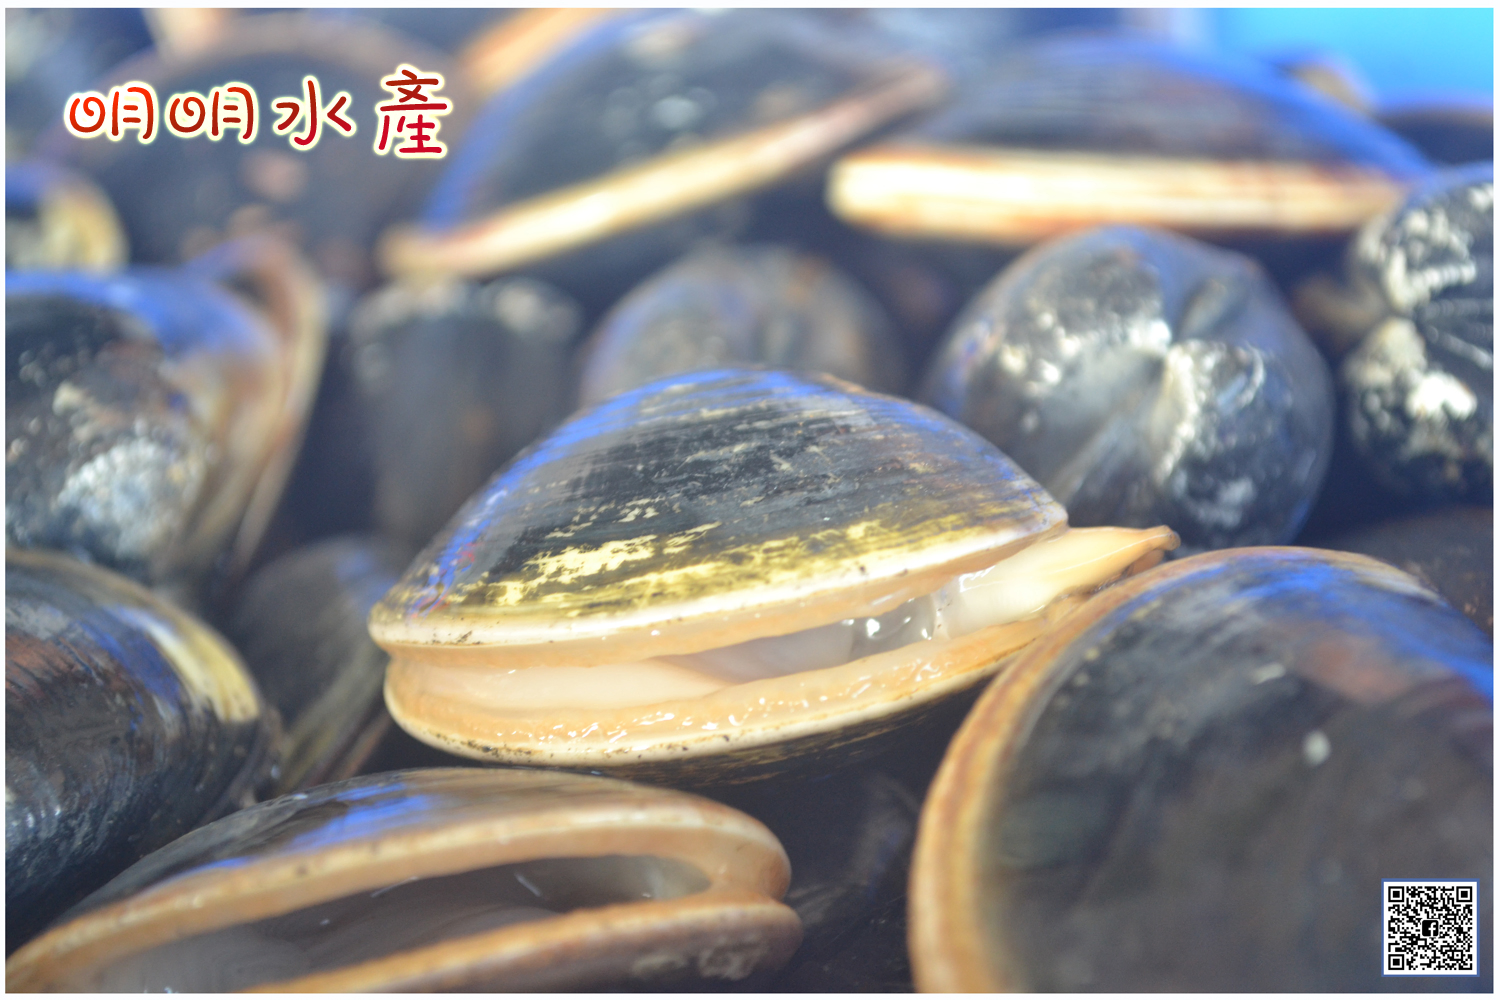 鹽水養殖蛤蜊 沒有漂白